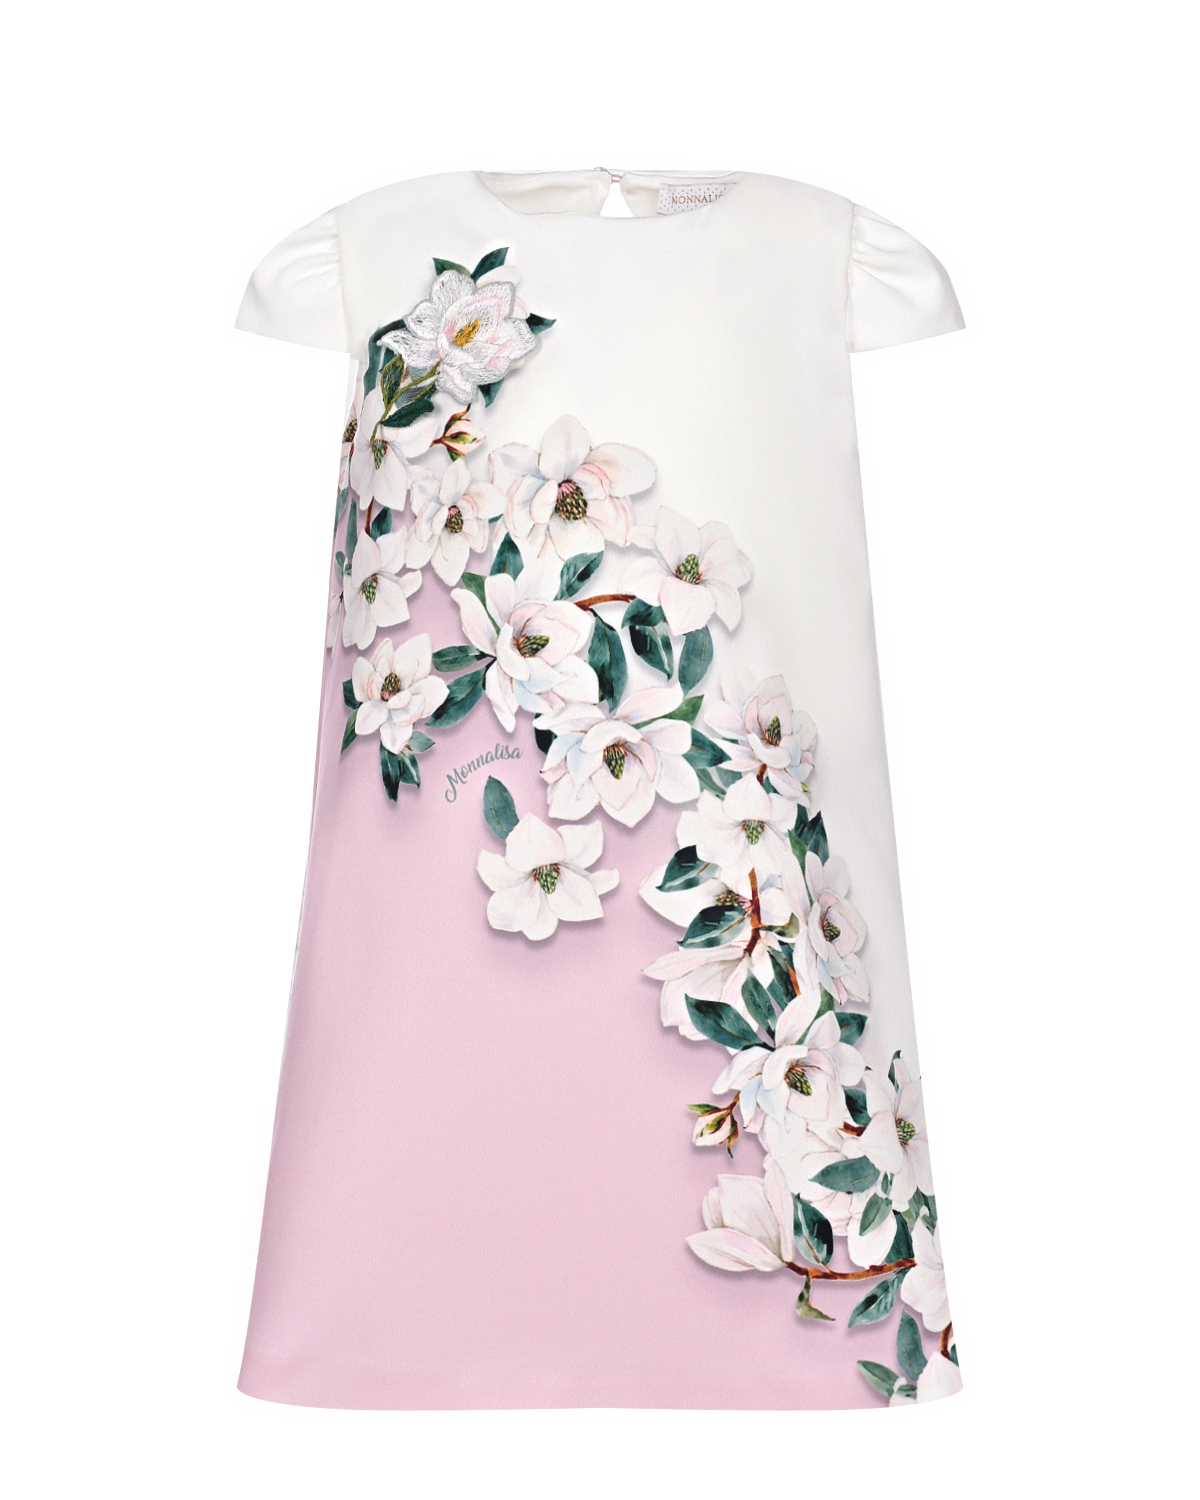 Бело-розовое платье с цветочным принтом Monnalisa платье для собак кулирка xs дс 24 ош 32 36 ог 34 38 розовое с серыми полосками